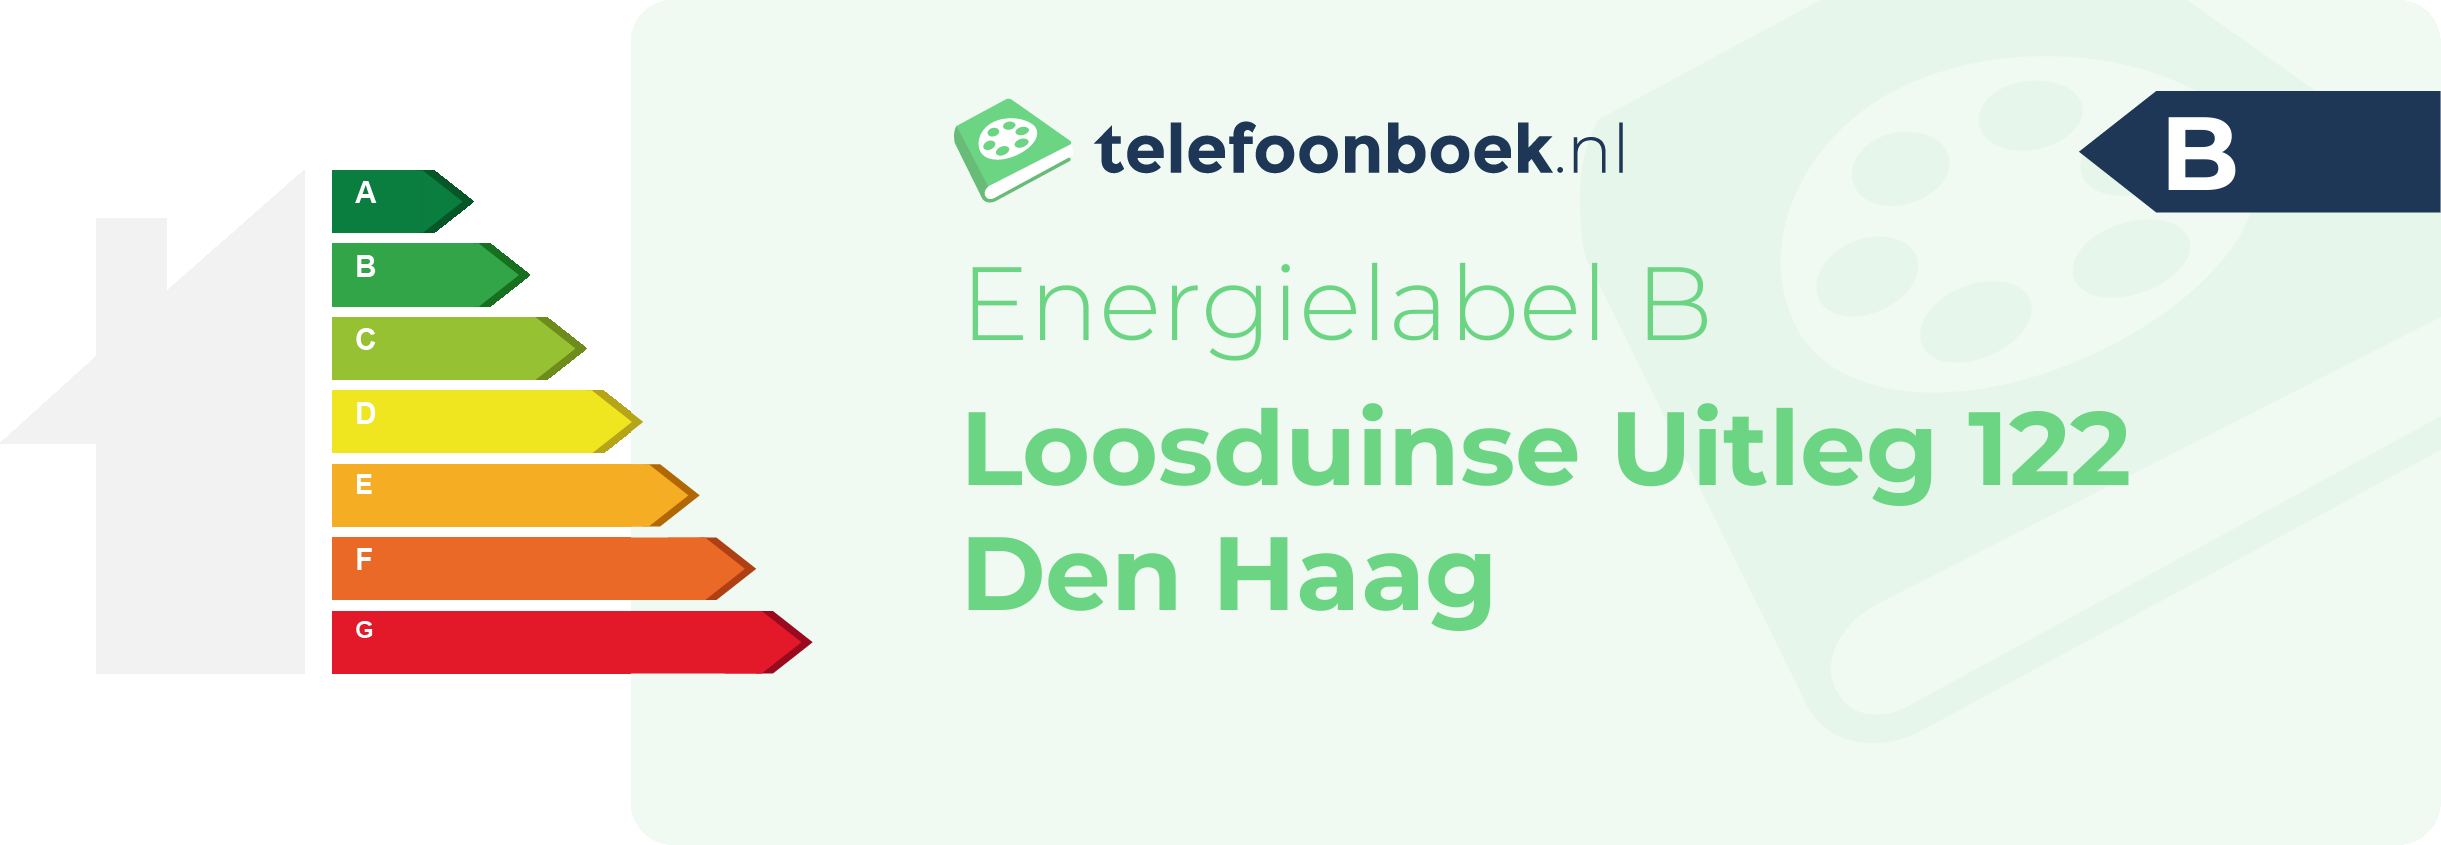 Energielabel Loosduinse Uitleg 122 Den Haag